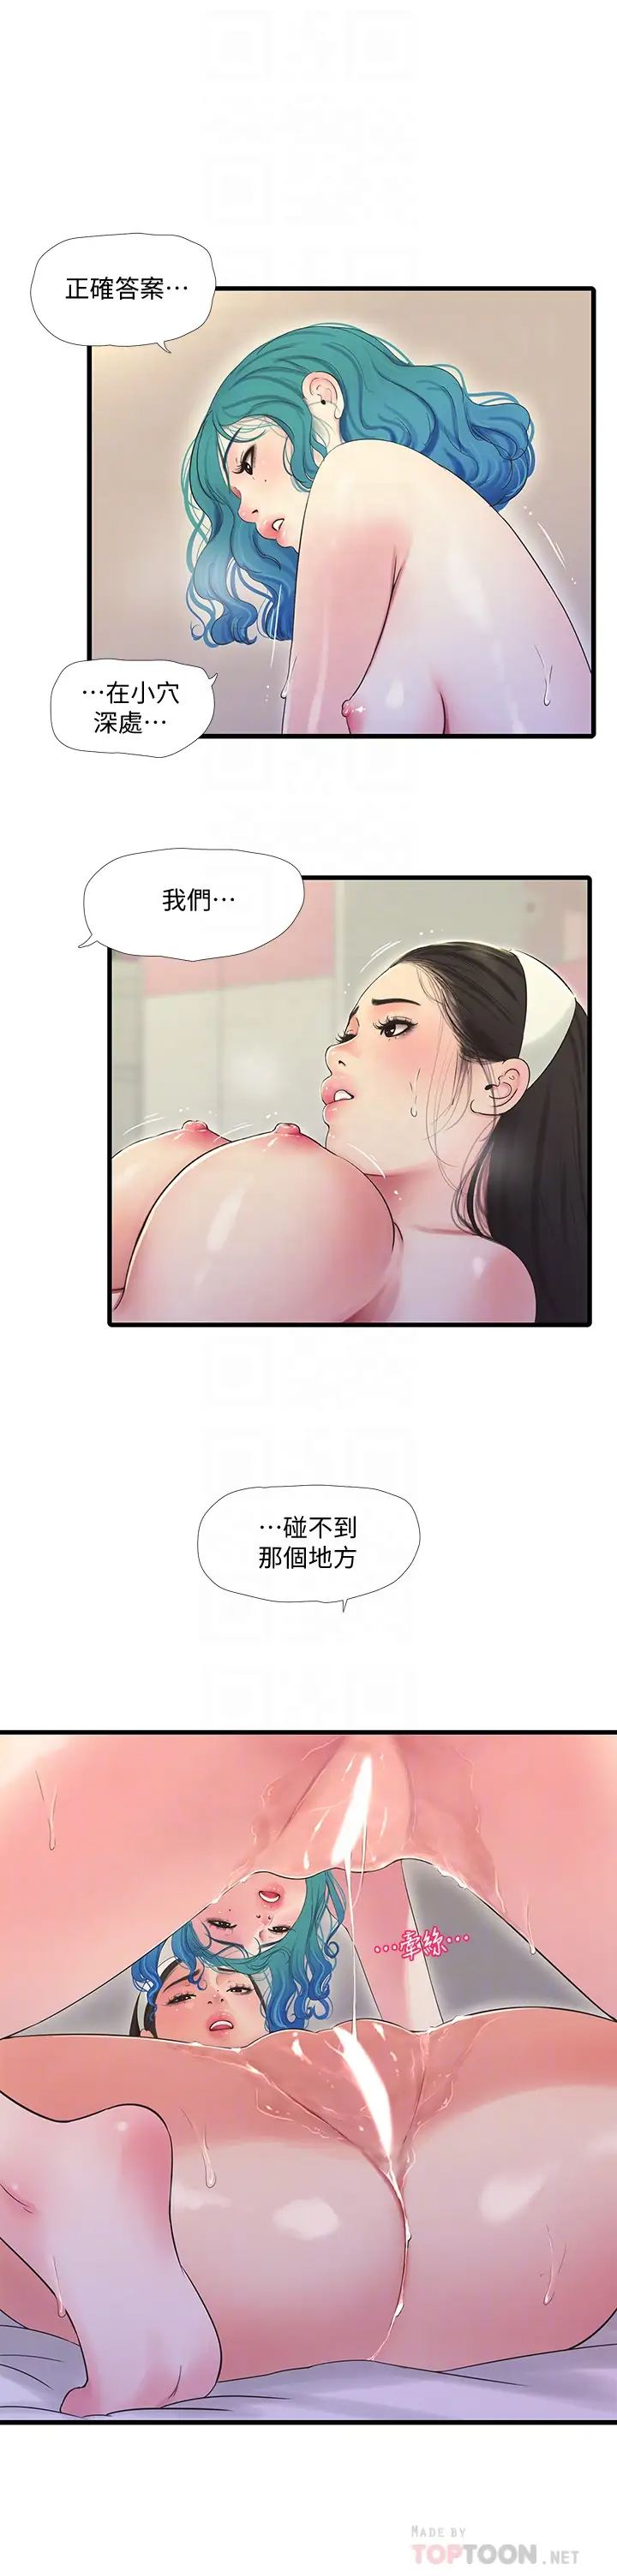 韩国污漫画 親傢四姊妹 第72话姊妹俩相交的下体 6